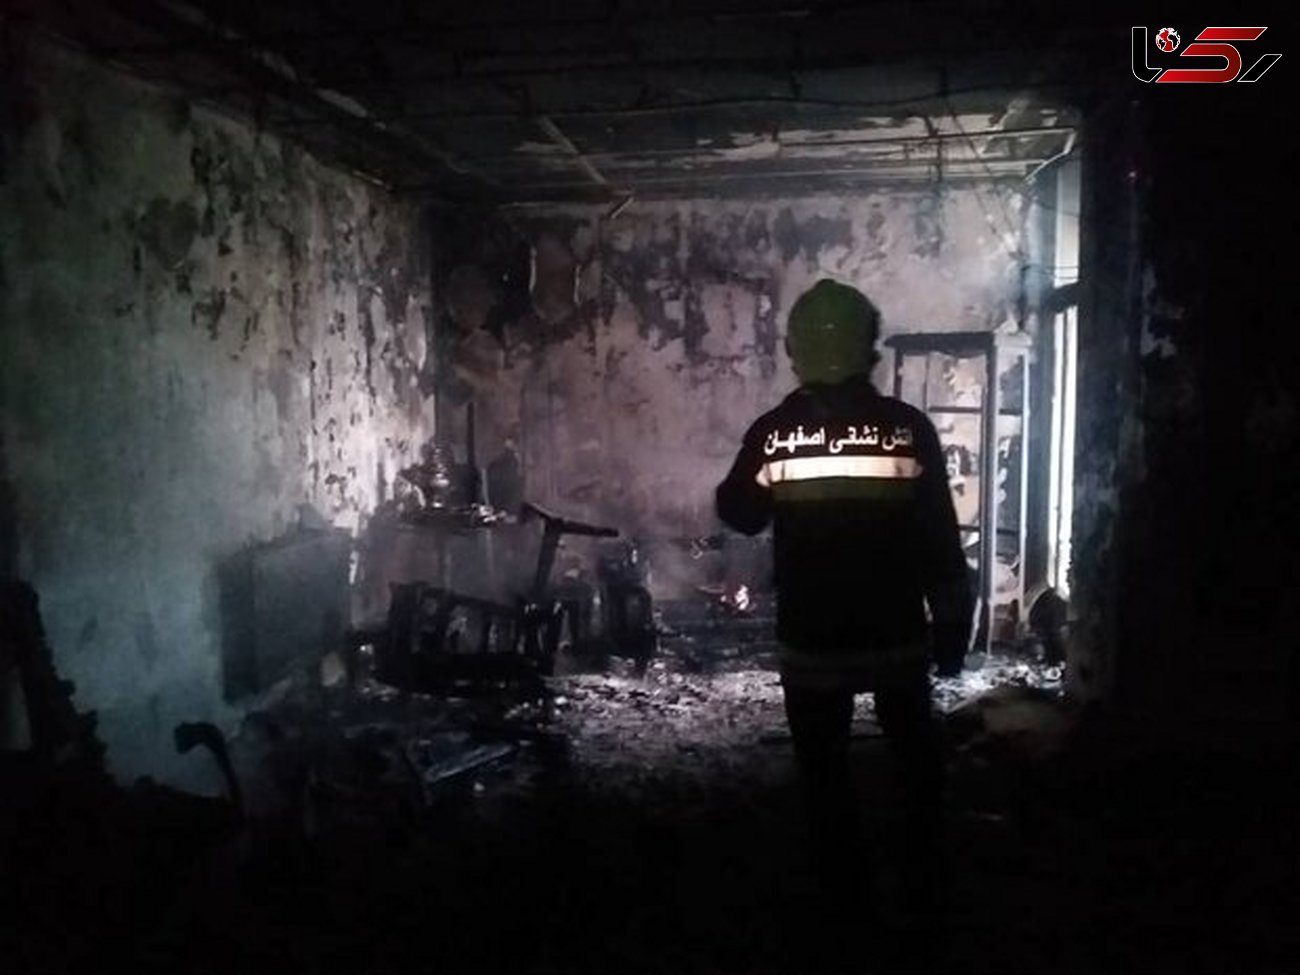 زن روستایی در آتش خانه اش زنده زنده سوخت / در اصفهان رخ داد